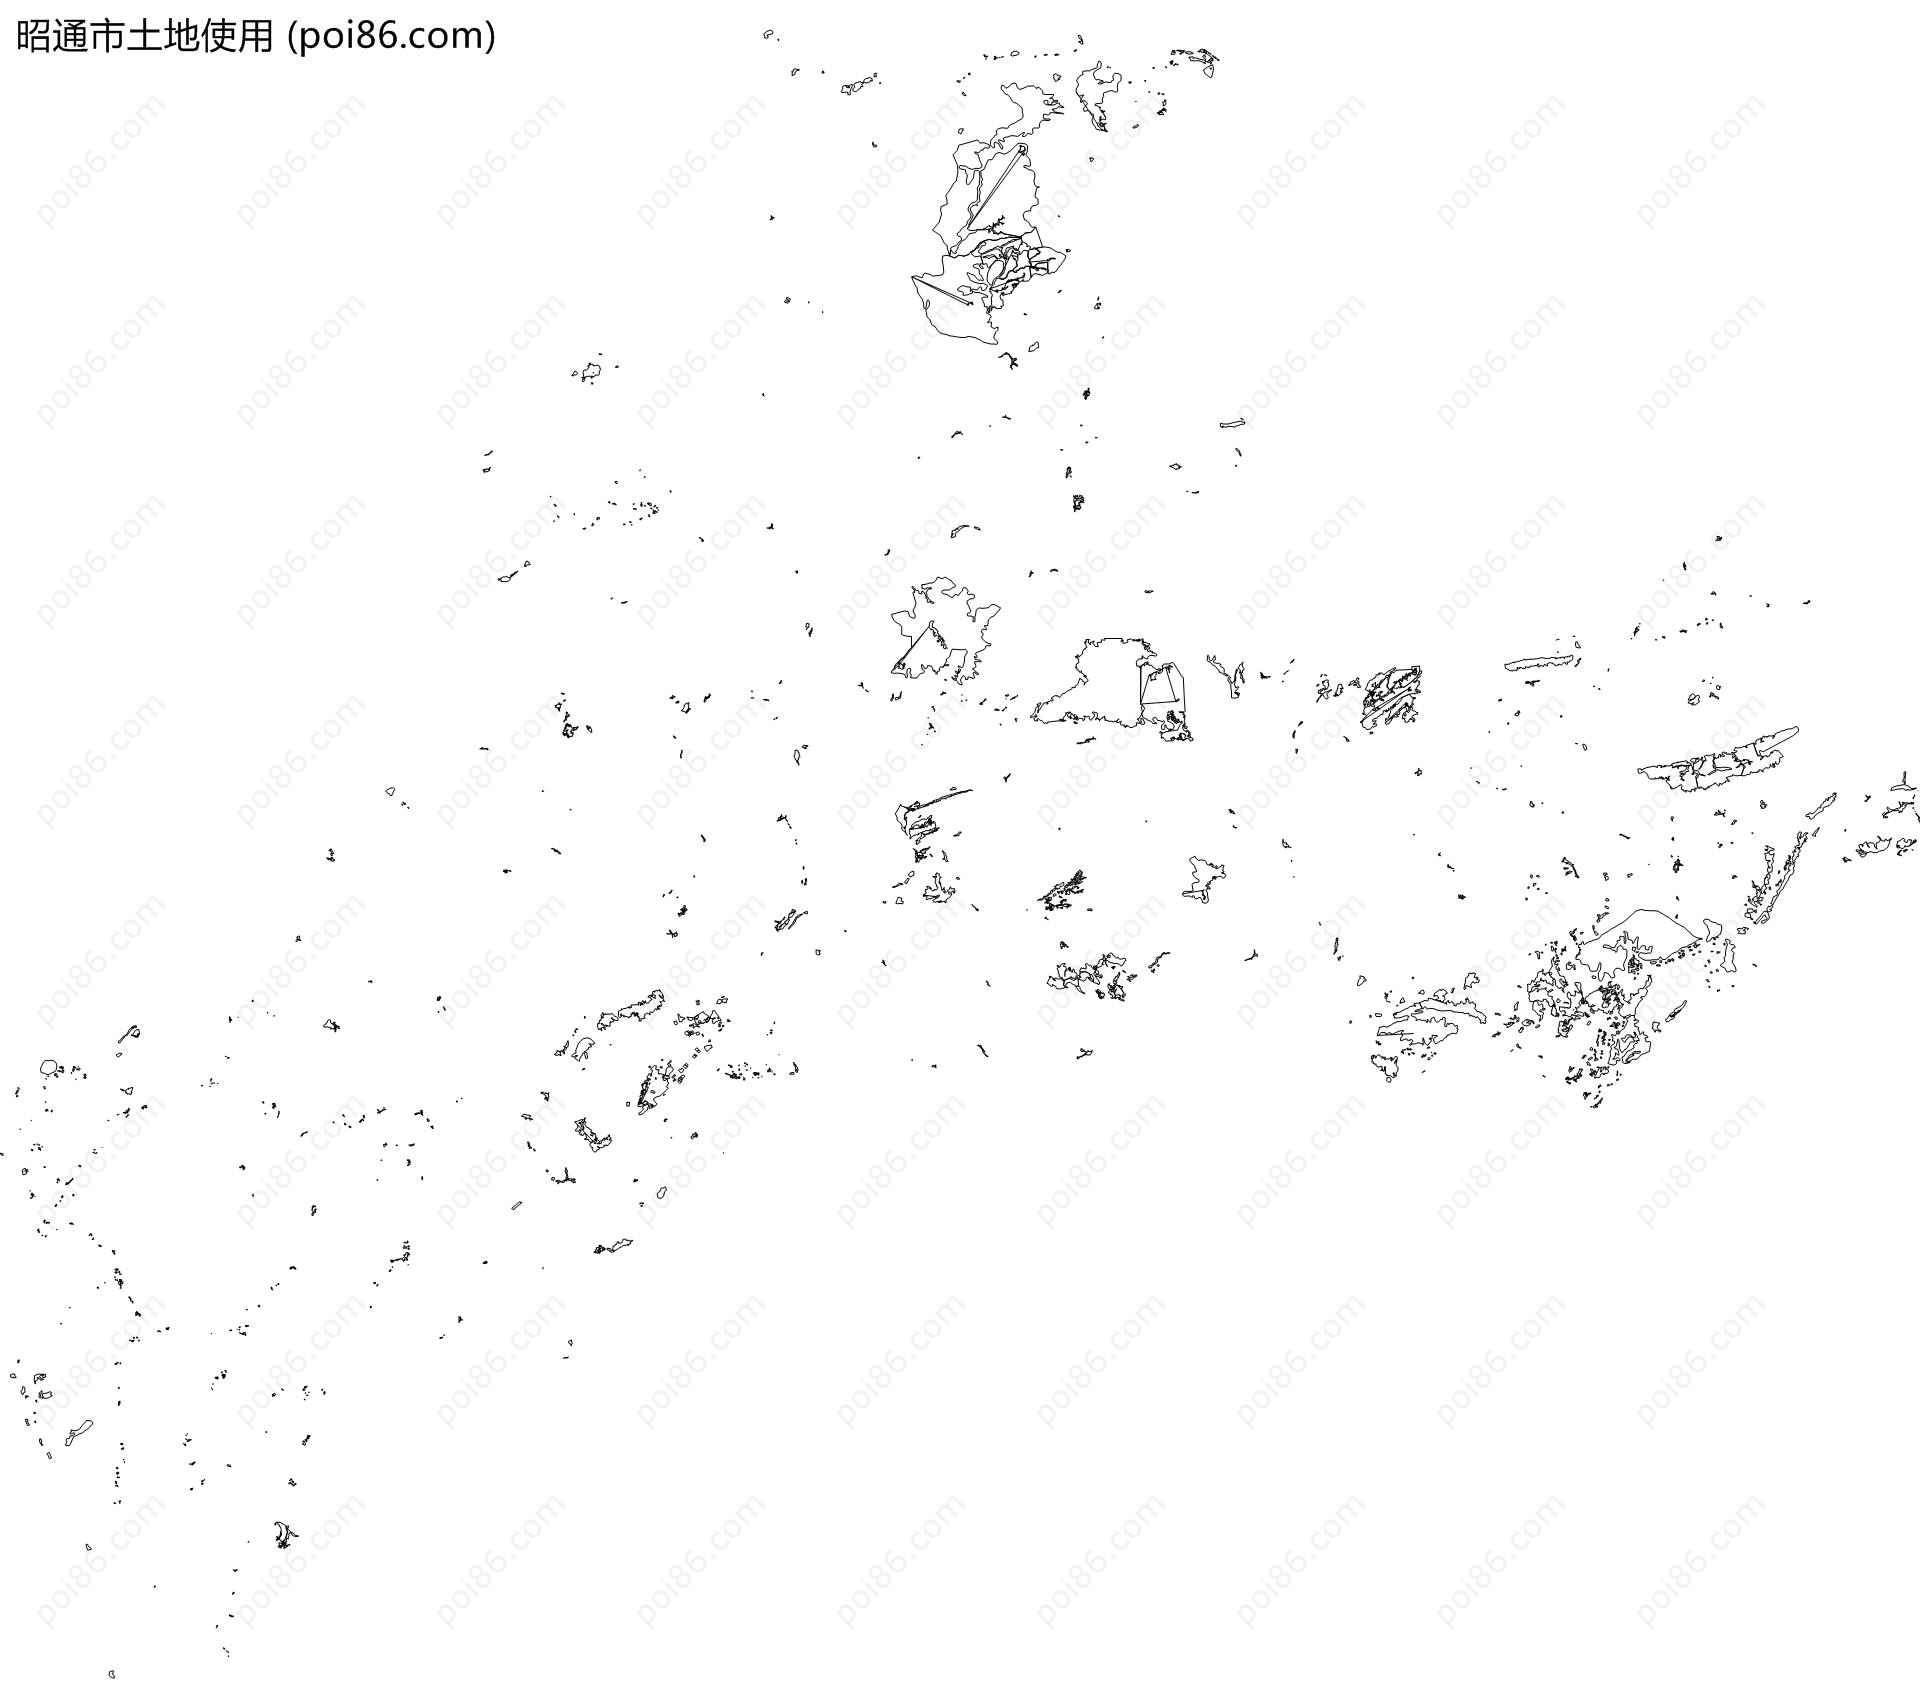 昭通市土地使用地图